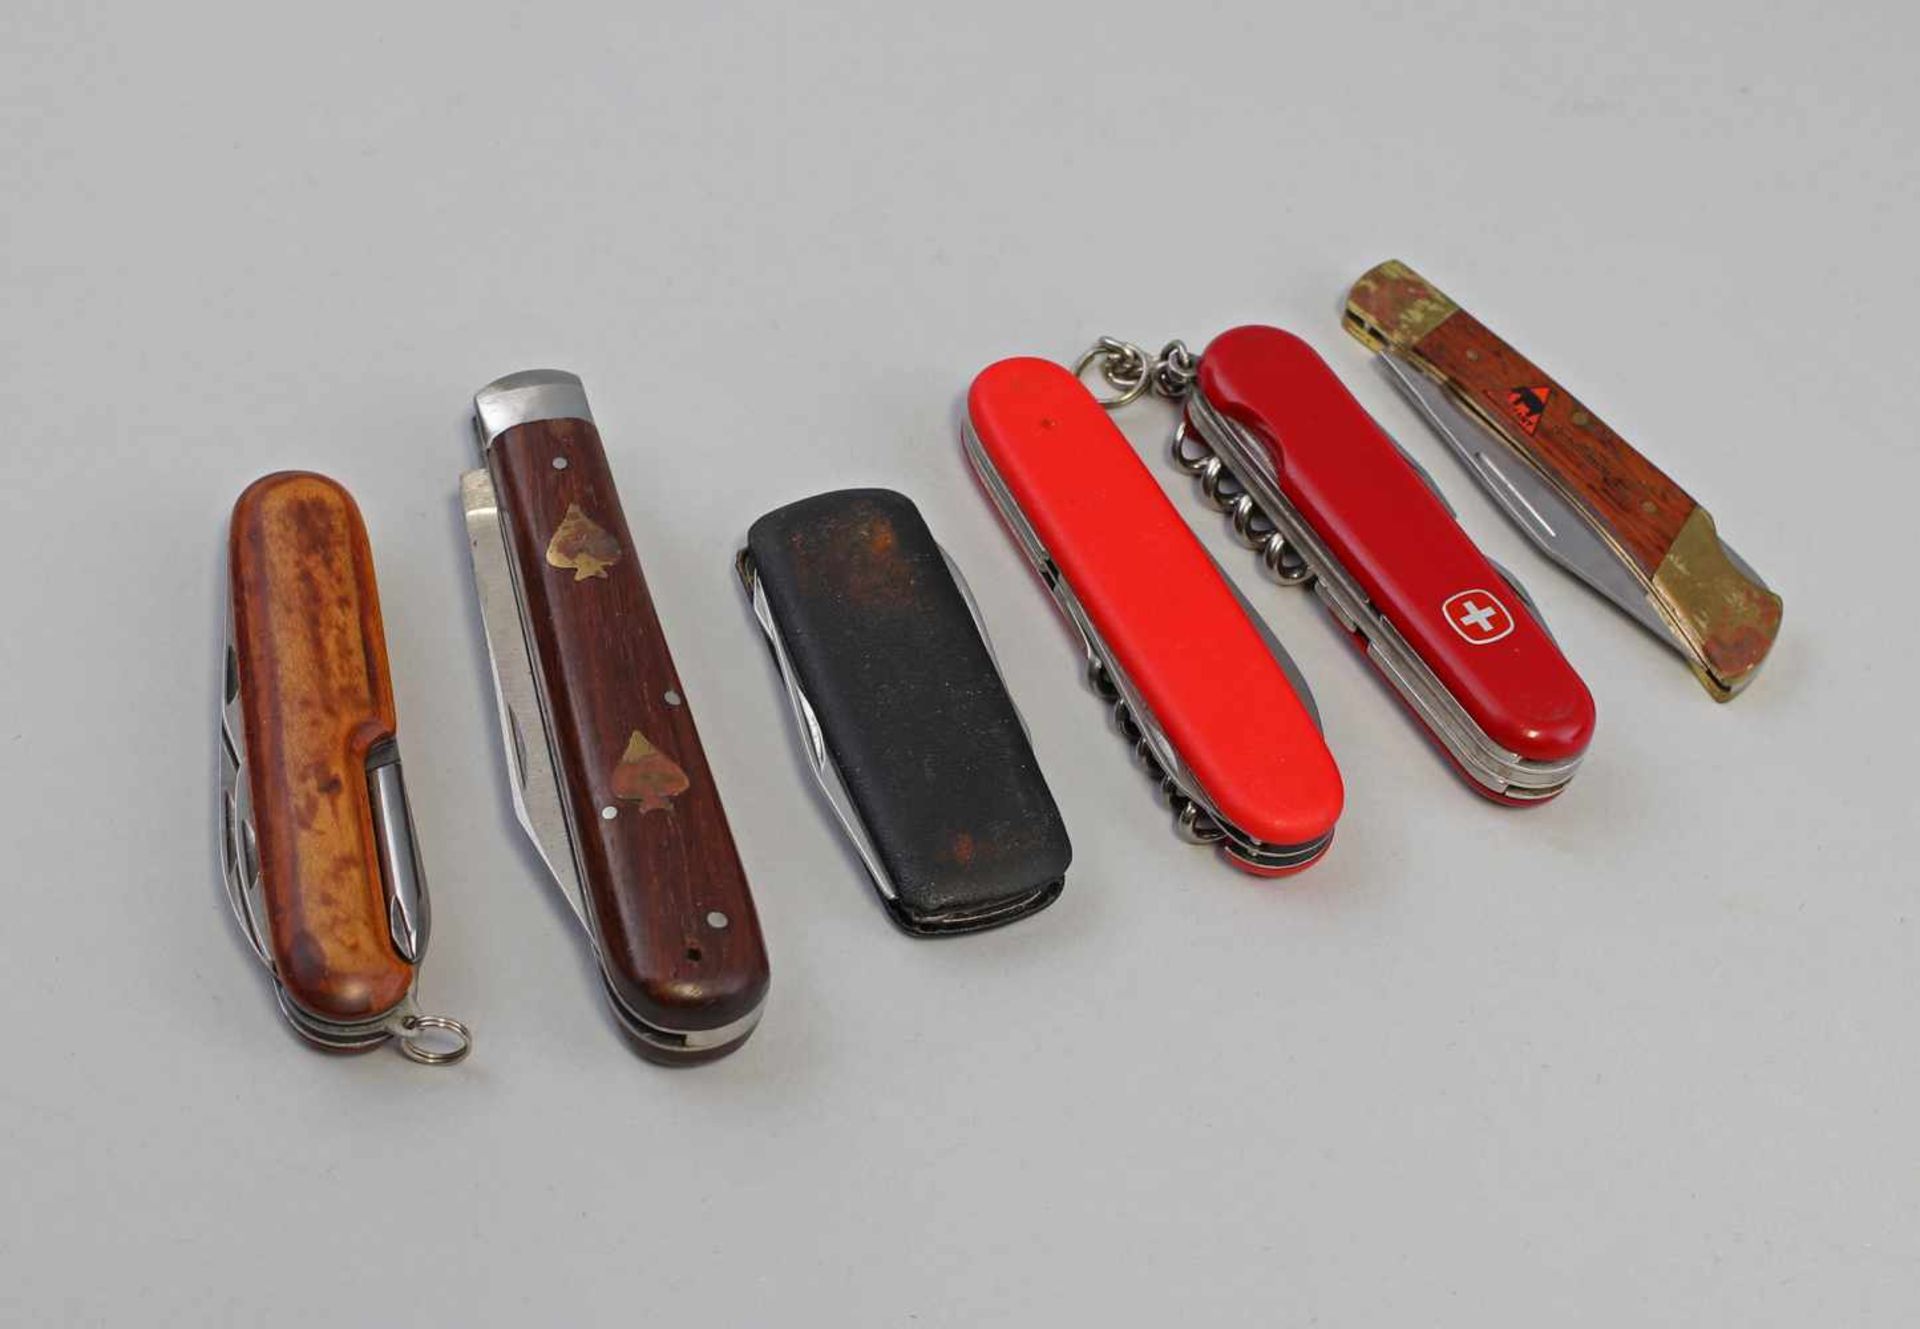 6 Taschenmesser dabei u.a. Stihl, schweizer Taschenmesser Wenger, Alters- und Gebrauchsspuren